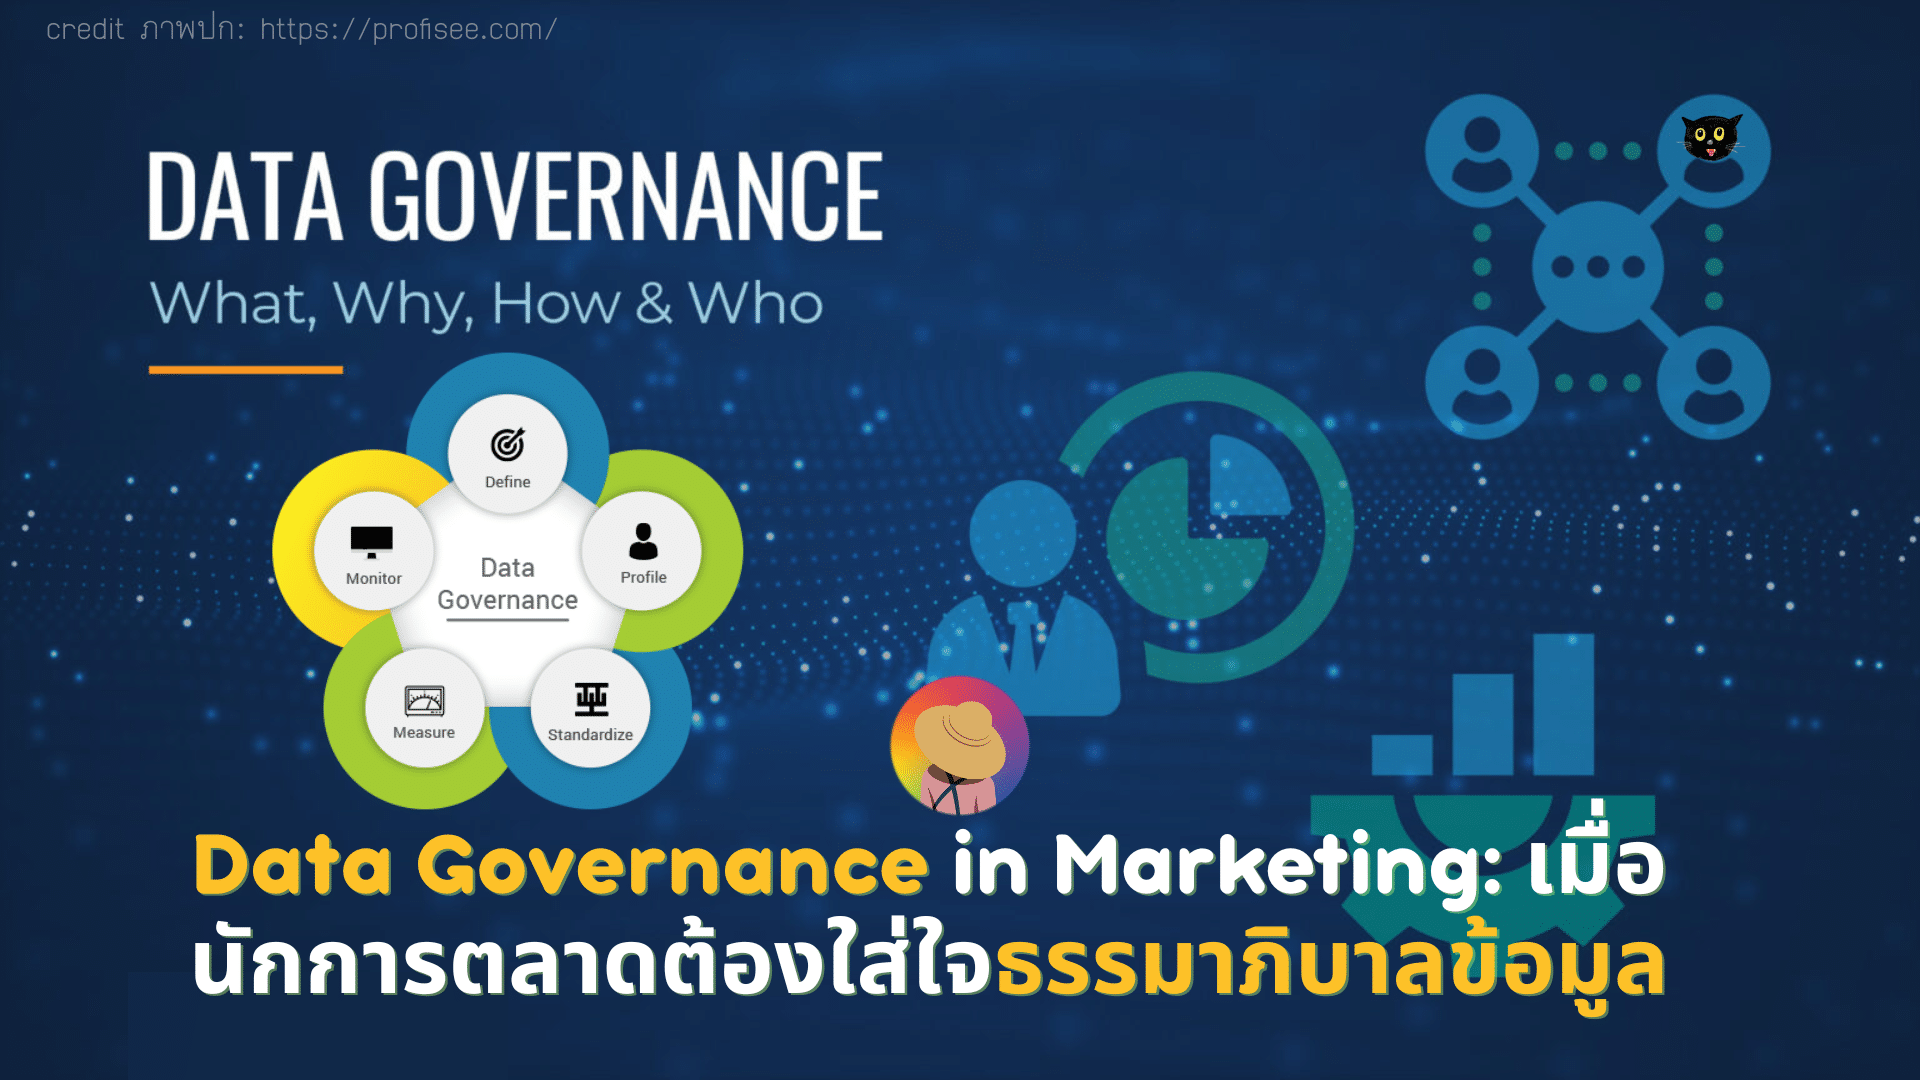 Data Governance in Marketing: เมื่อนักการตลาดต้องใส่ใจธรรมาภิบาลข้อมูล